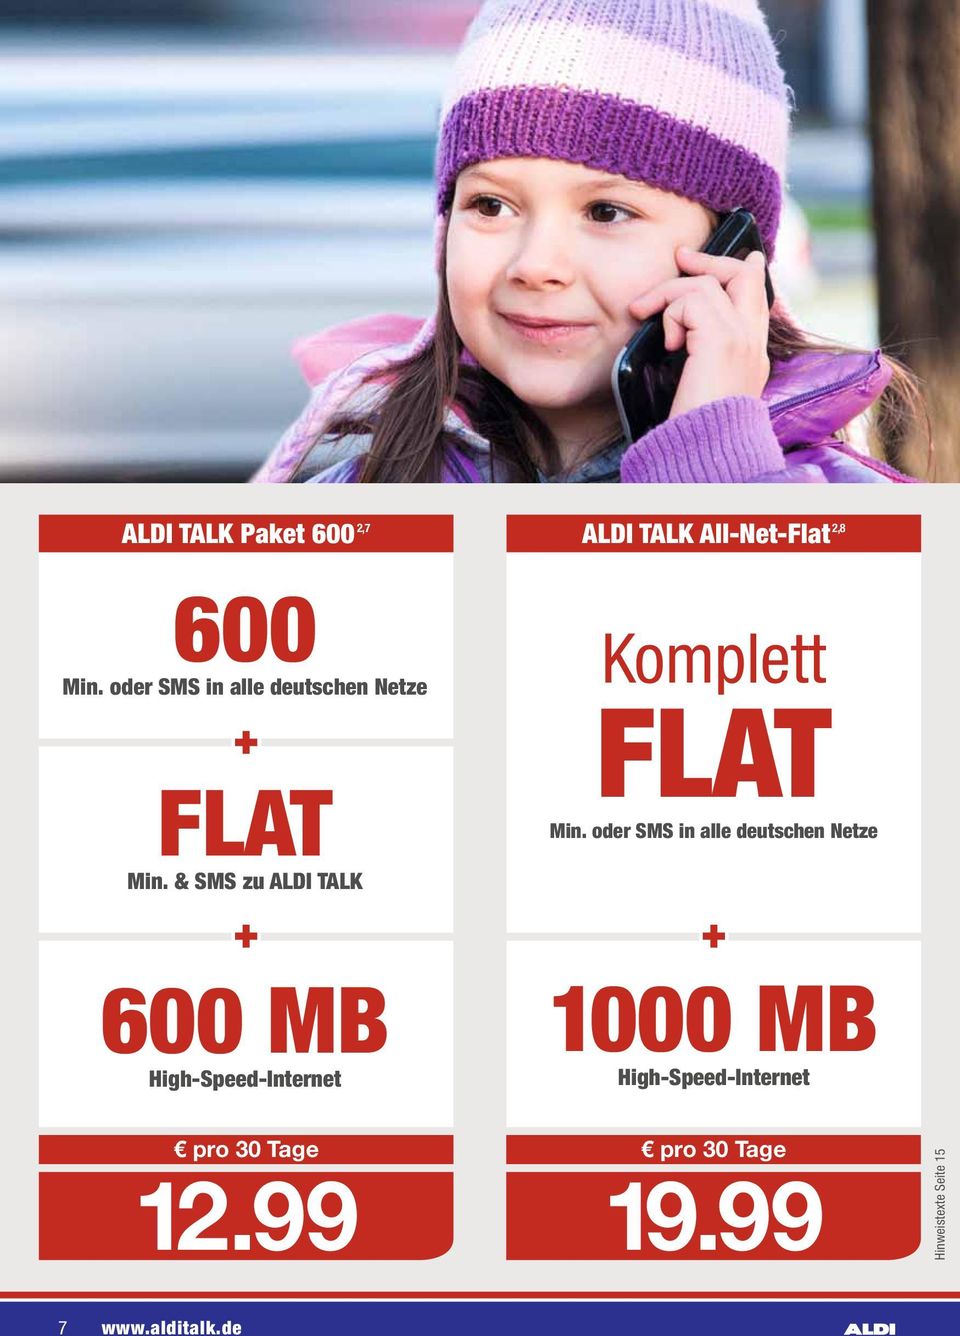 & SMS zu ALDI TALK ALDI TALK All-Net-Flat 2,8 Komplett